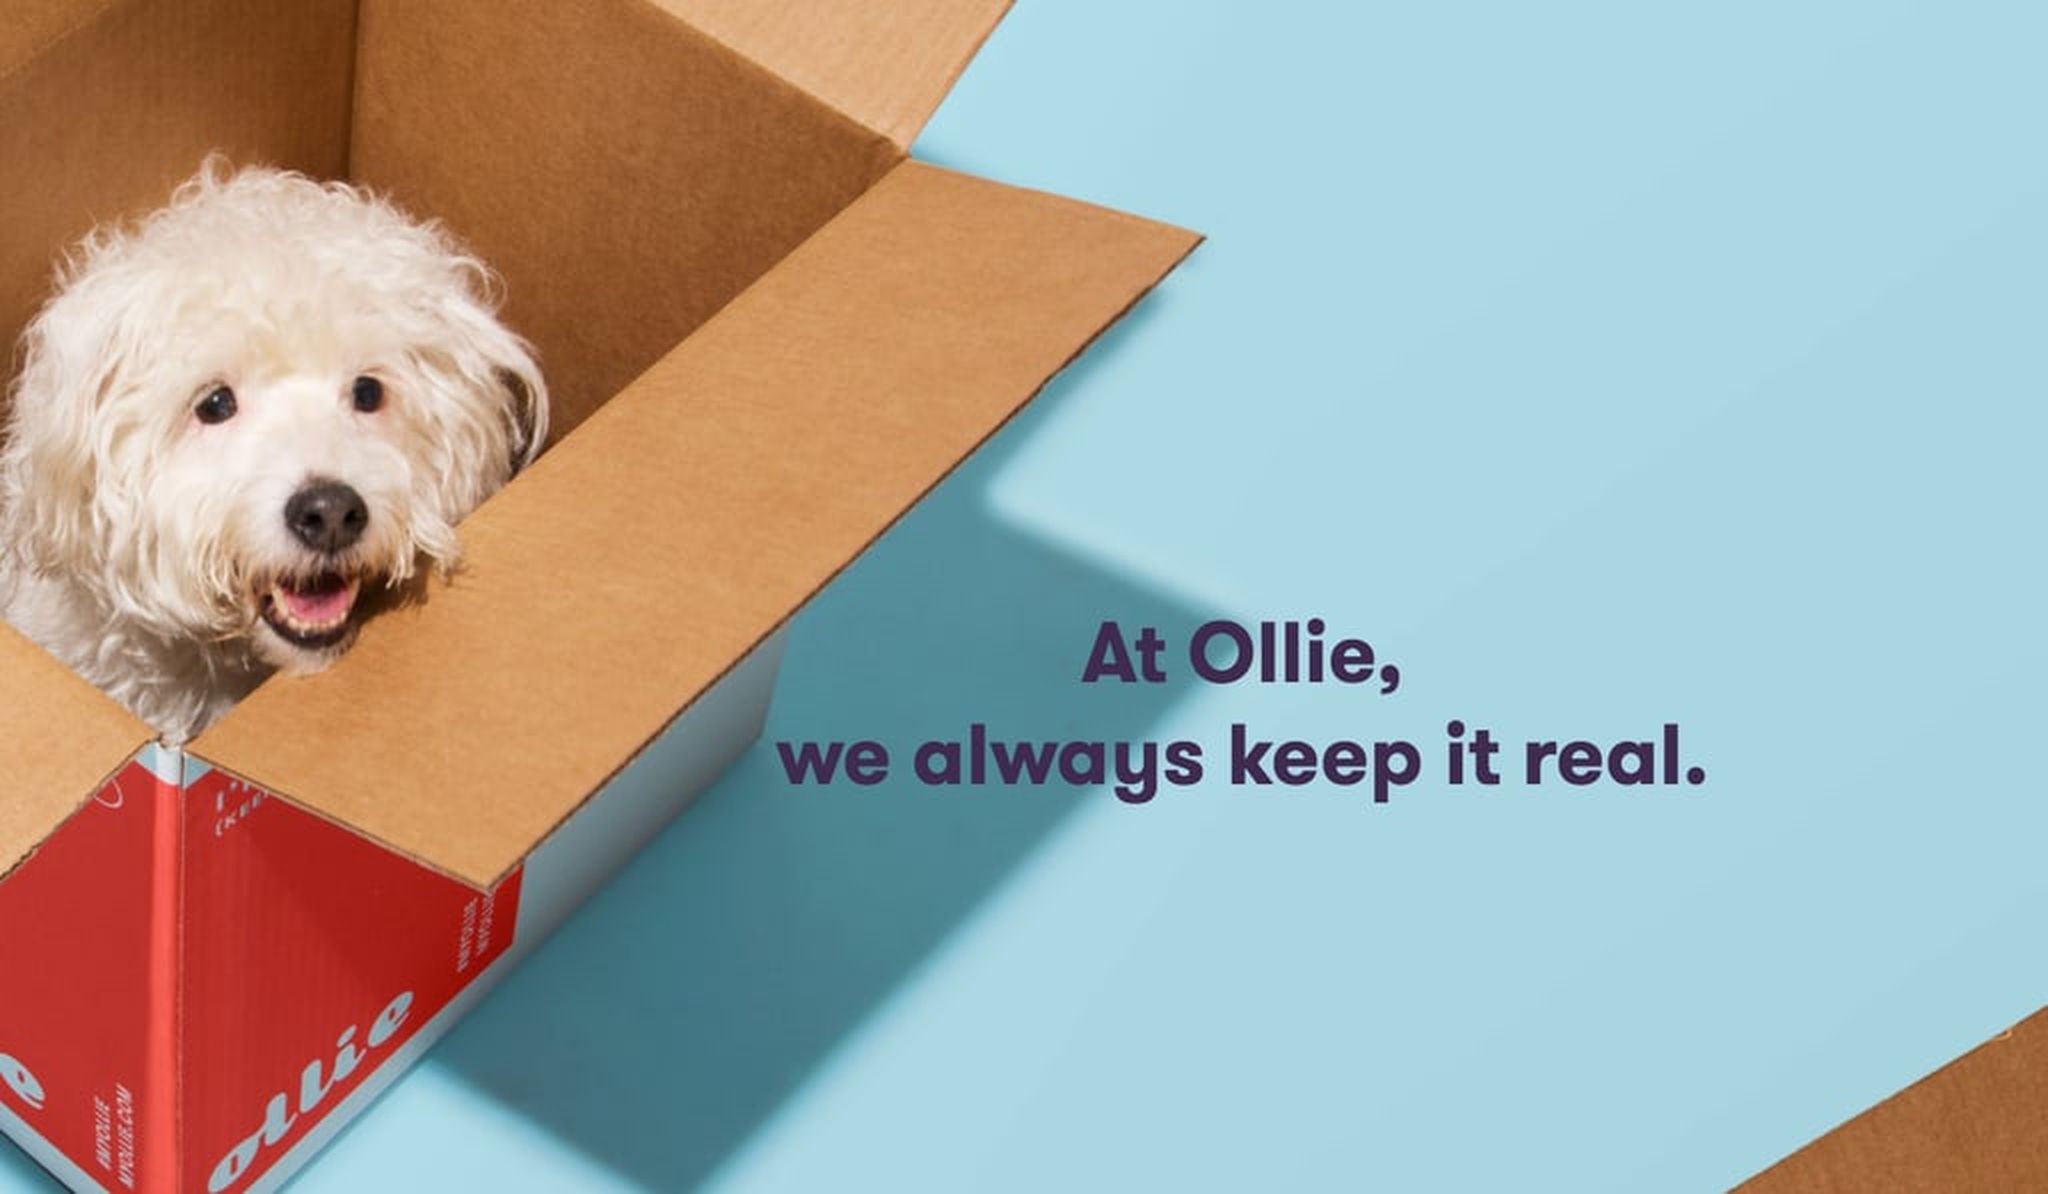 At Ollie, we always keep it real.